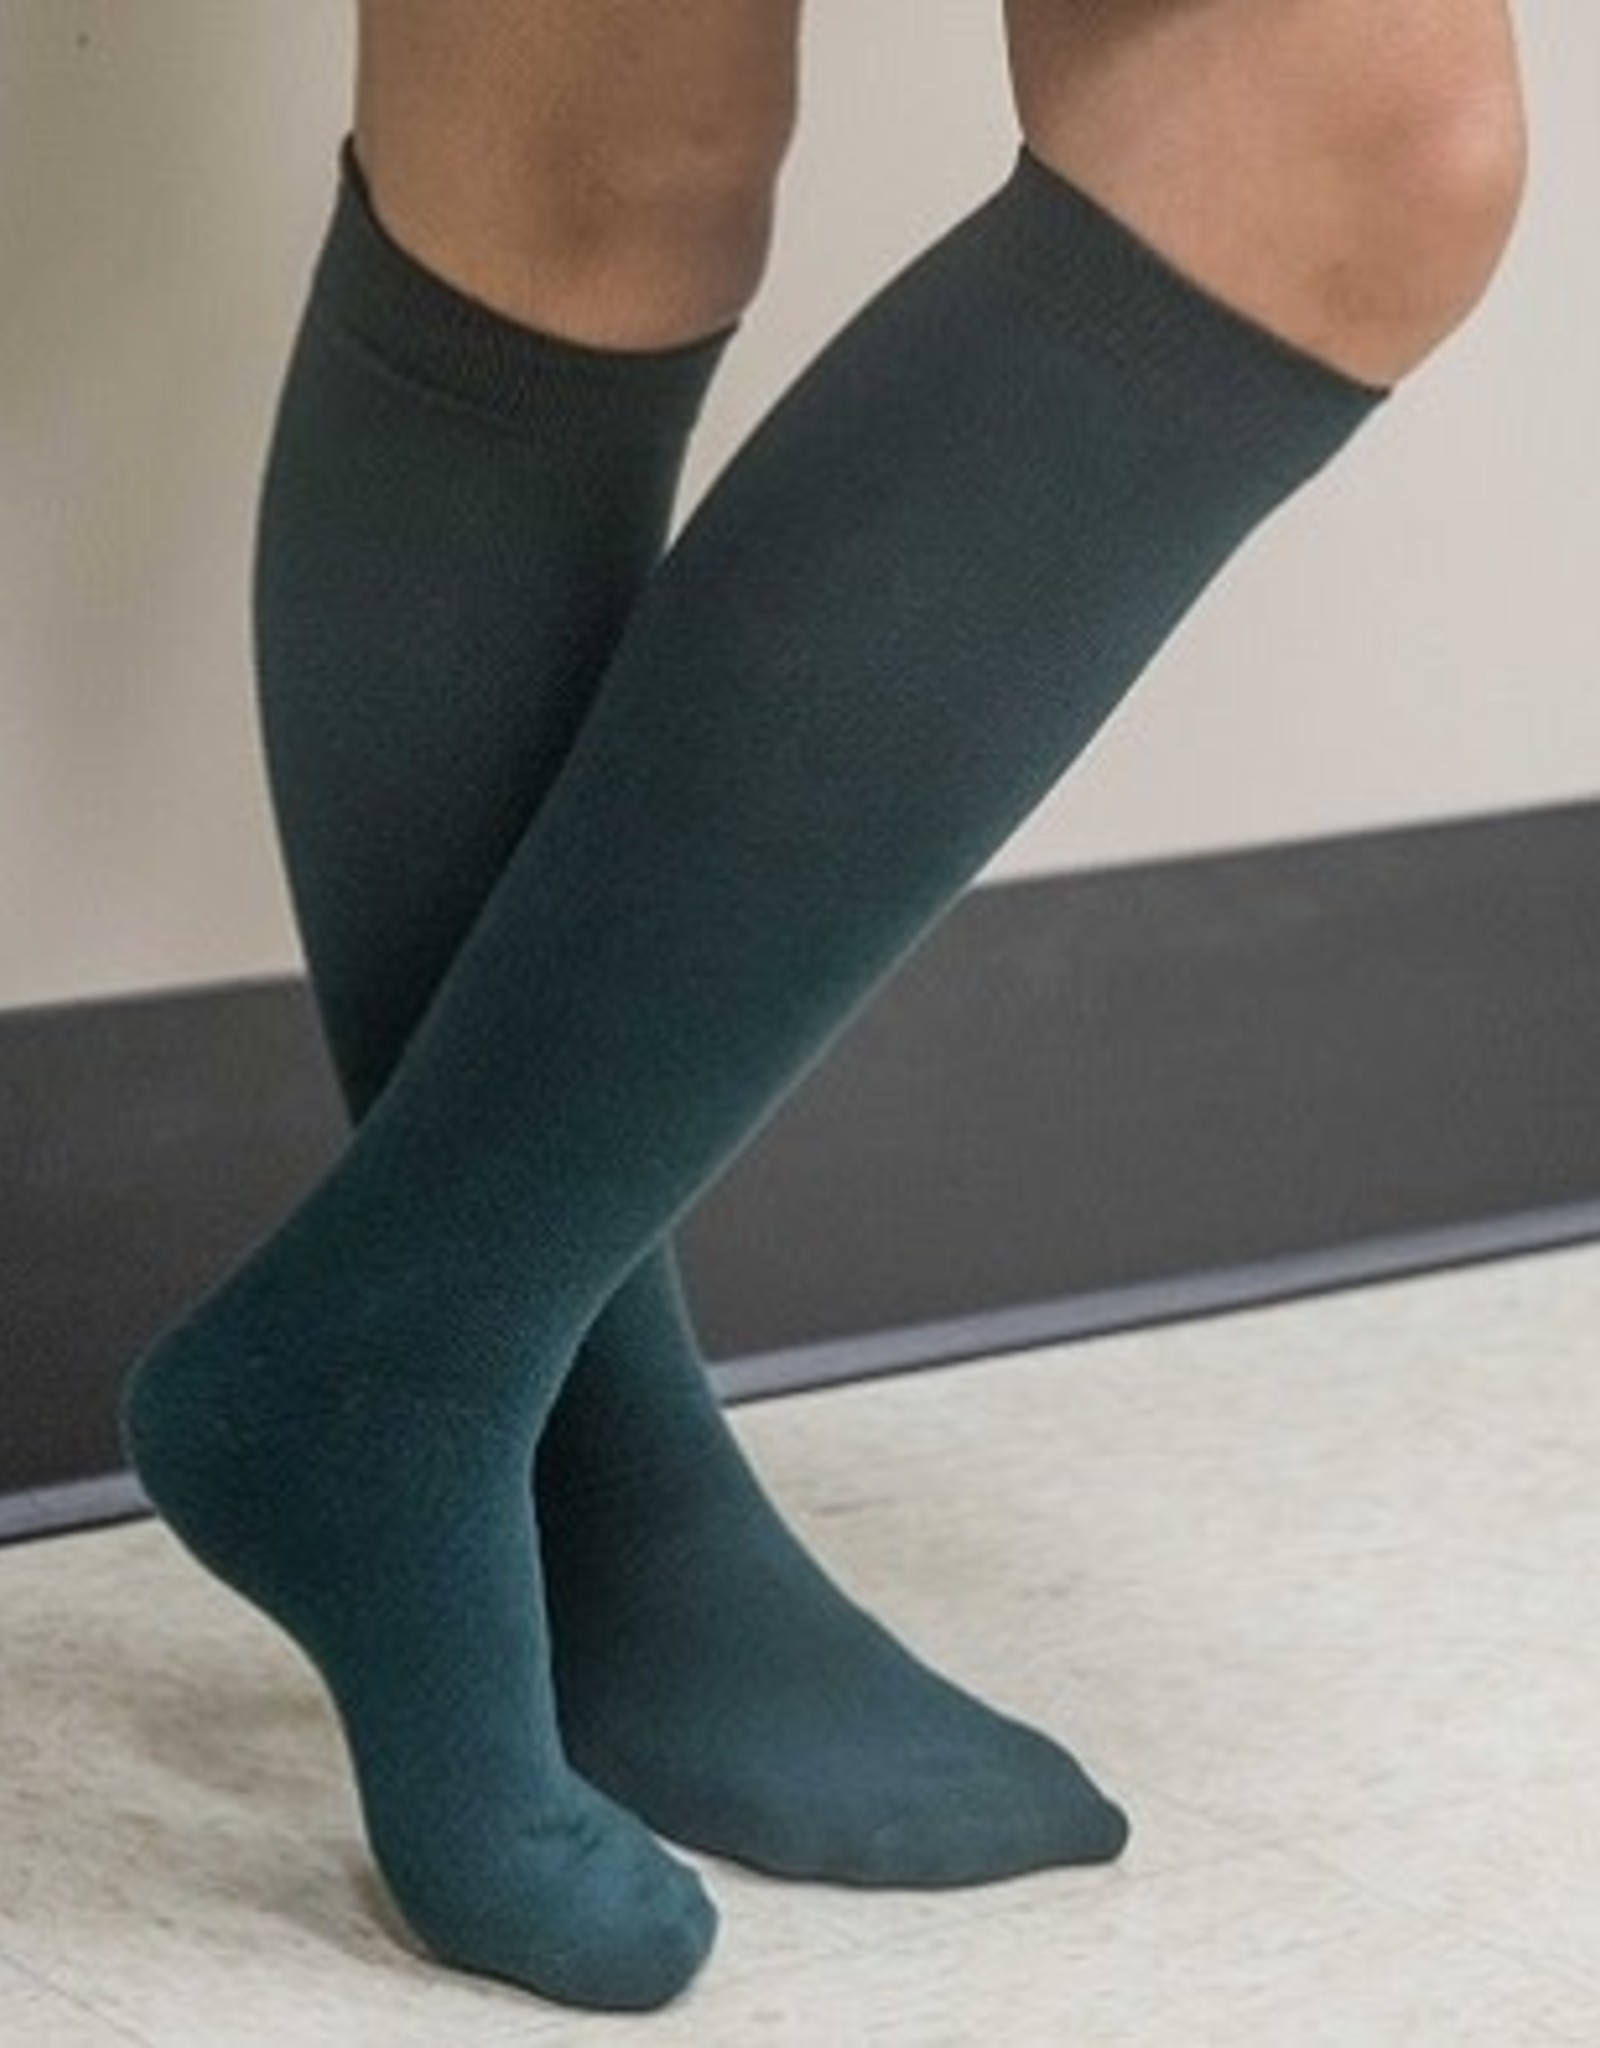 Green Knee Socks Girls